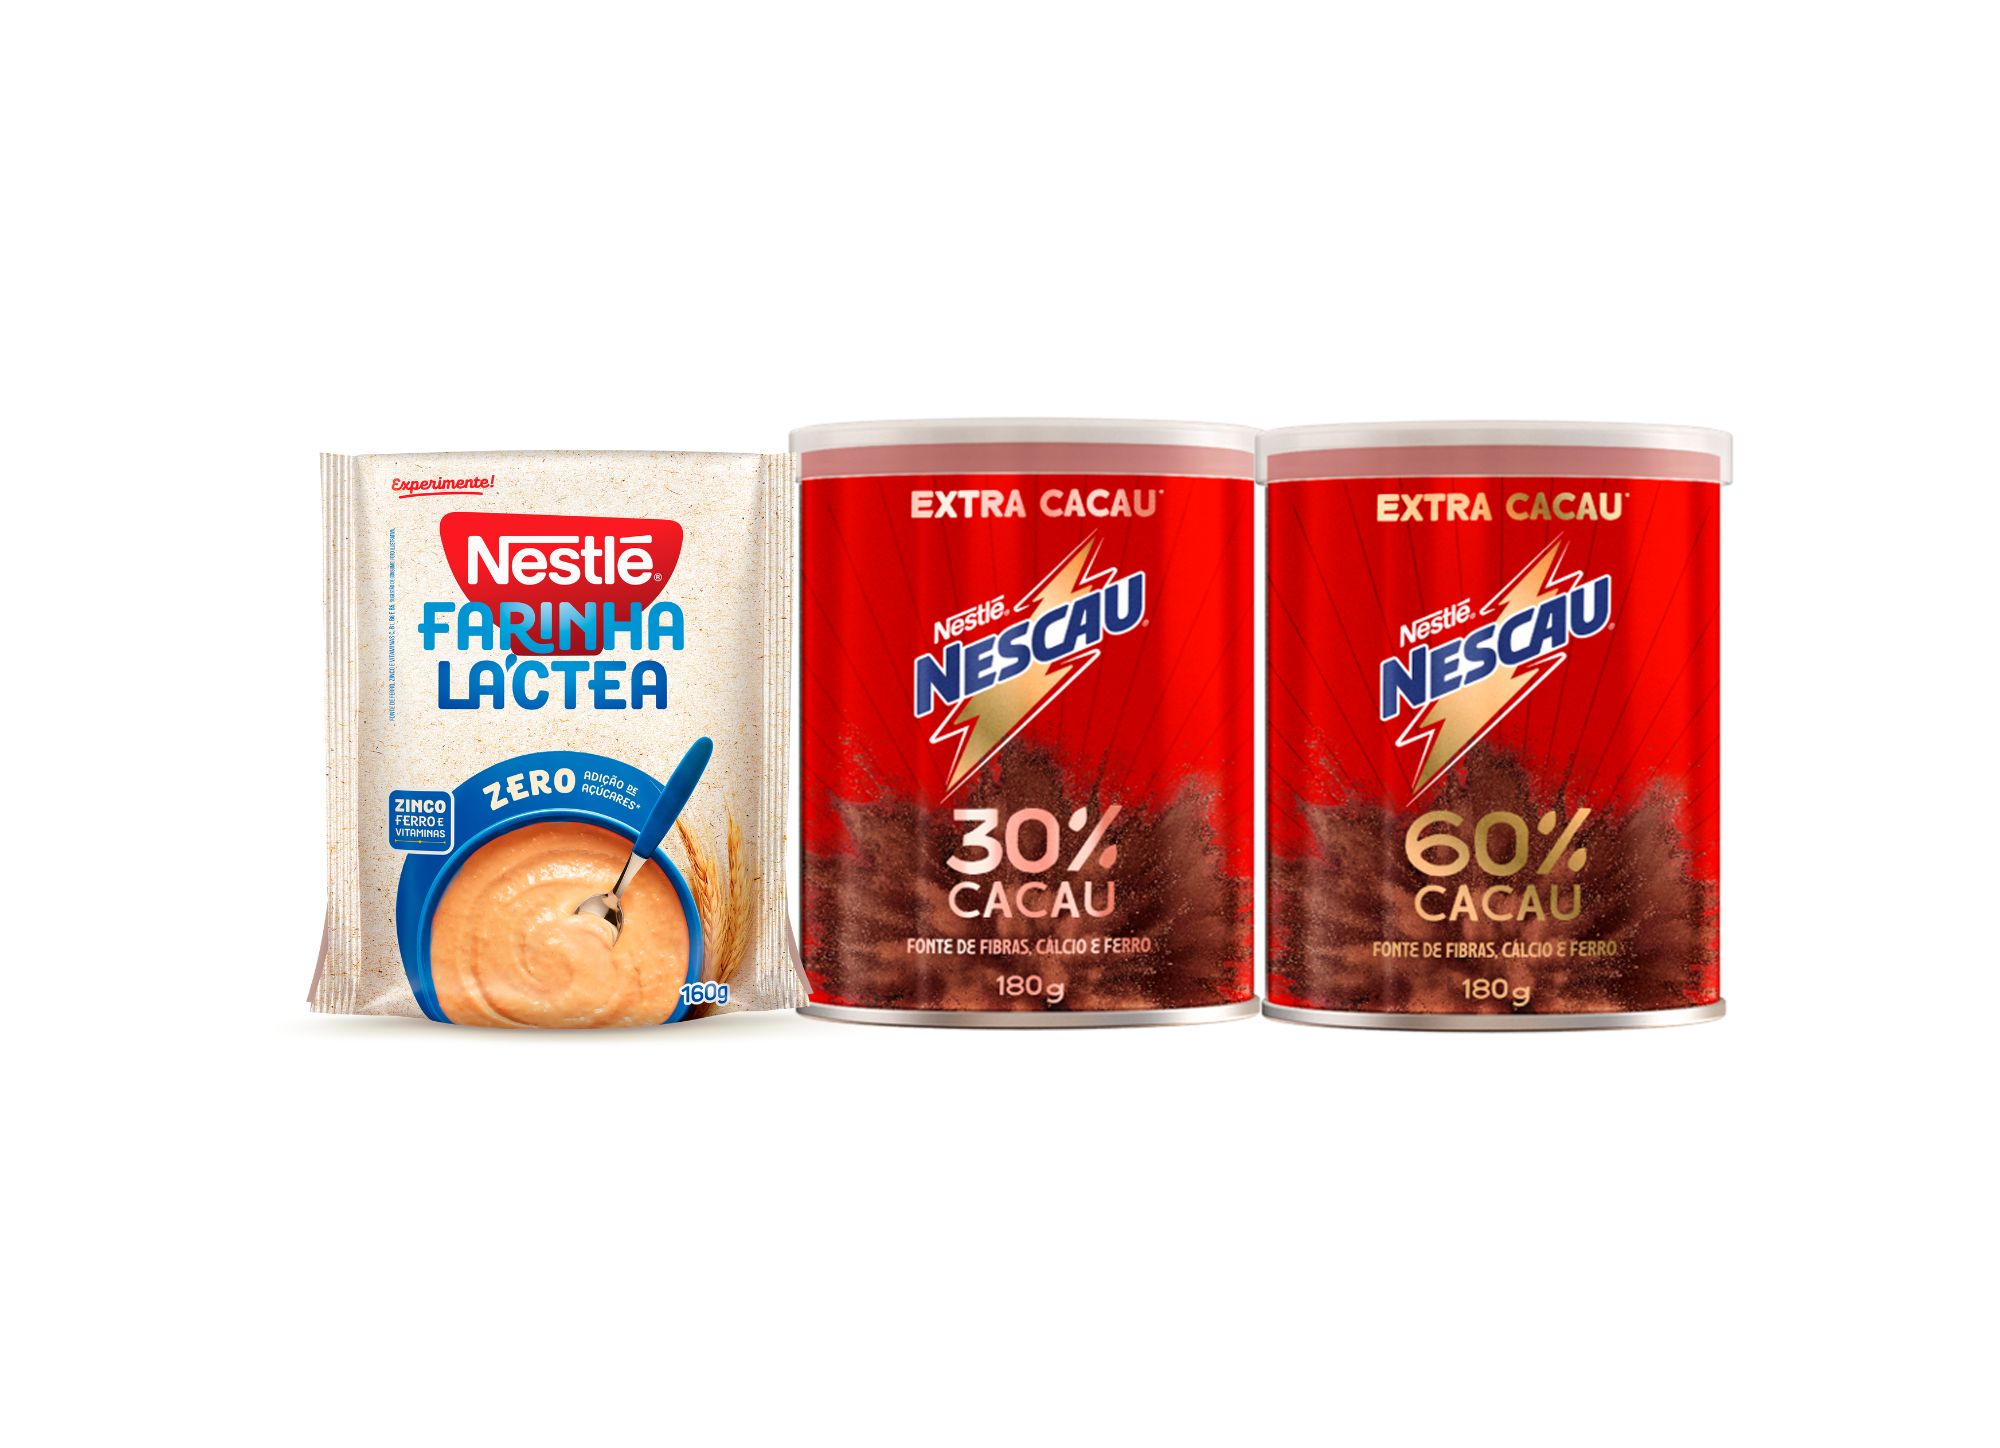 Featured image for “Nestlé apresenta dois lançamentos”